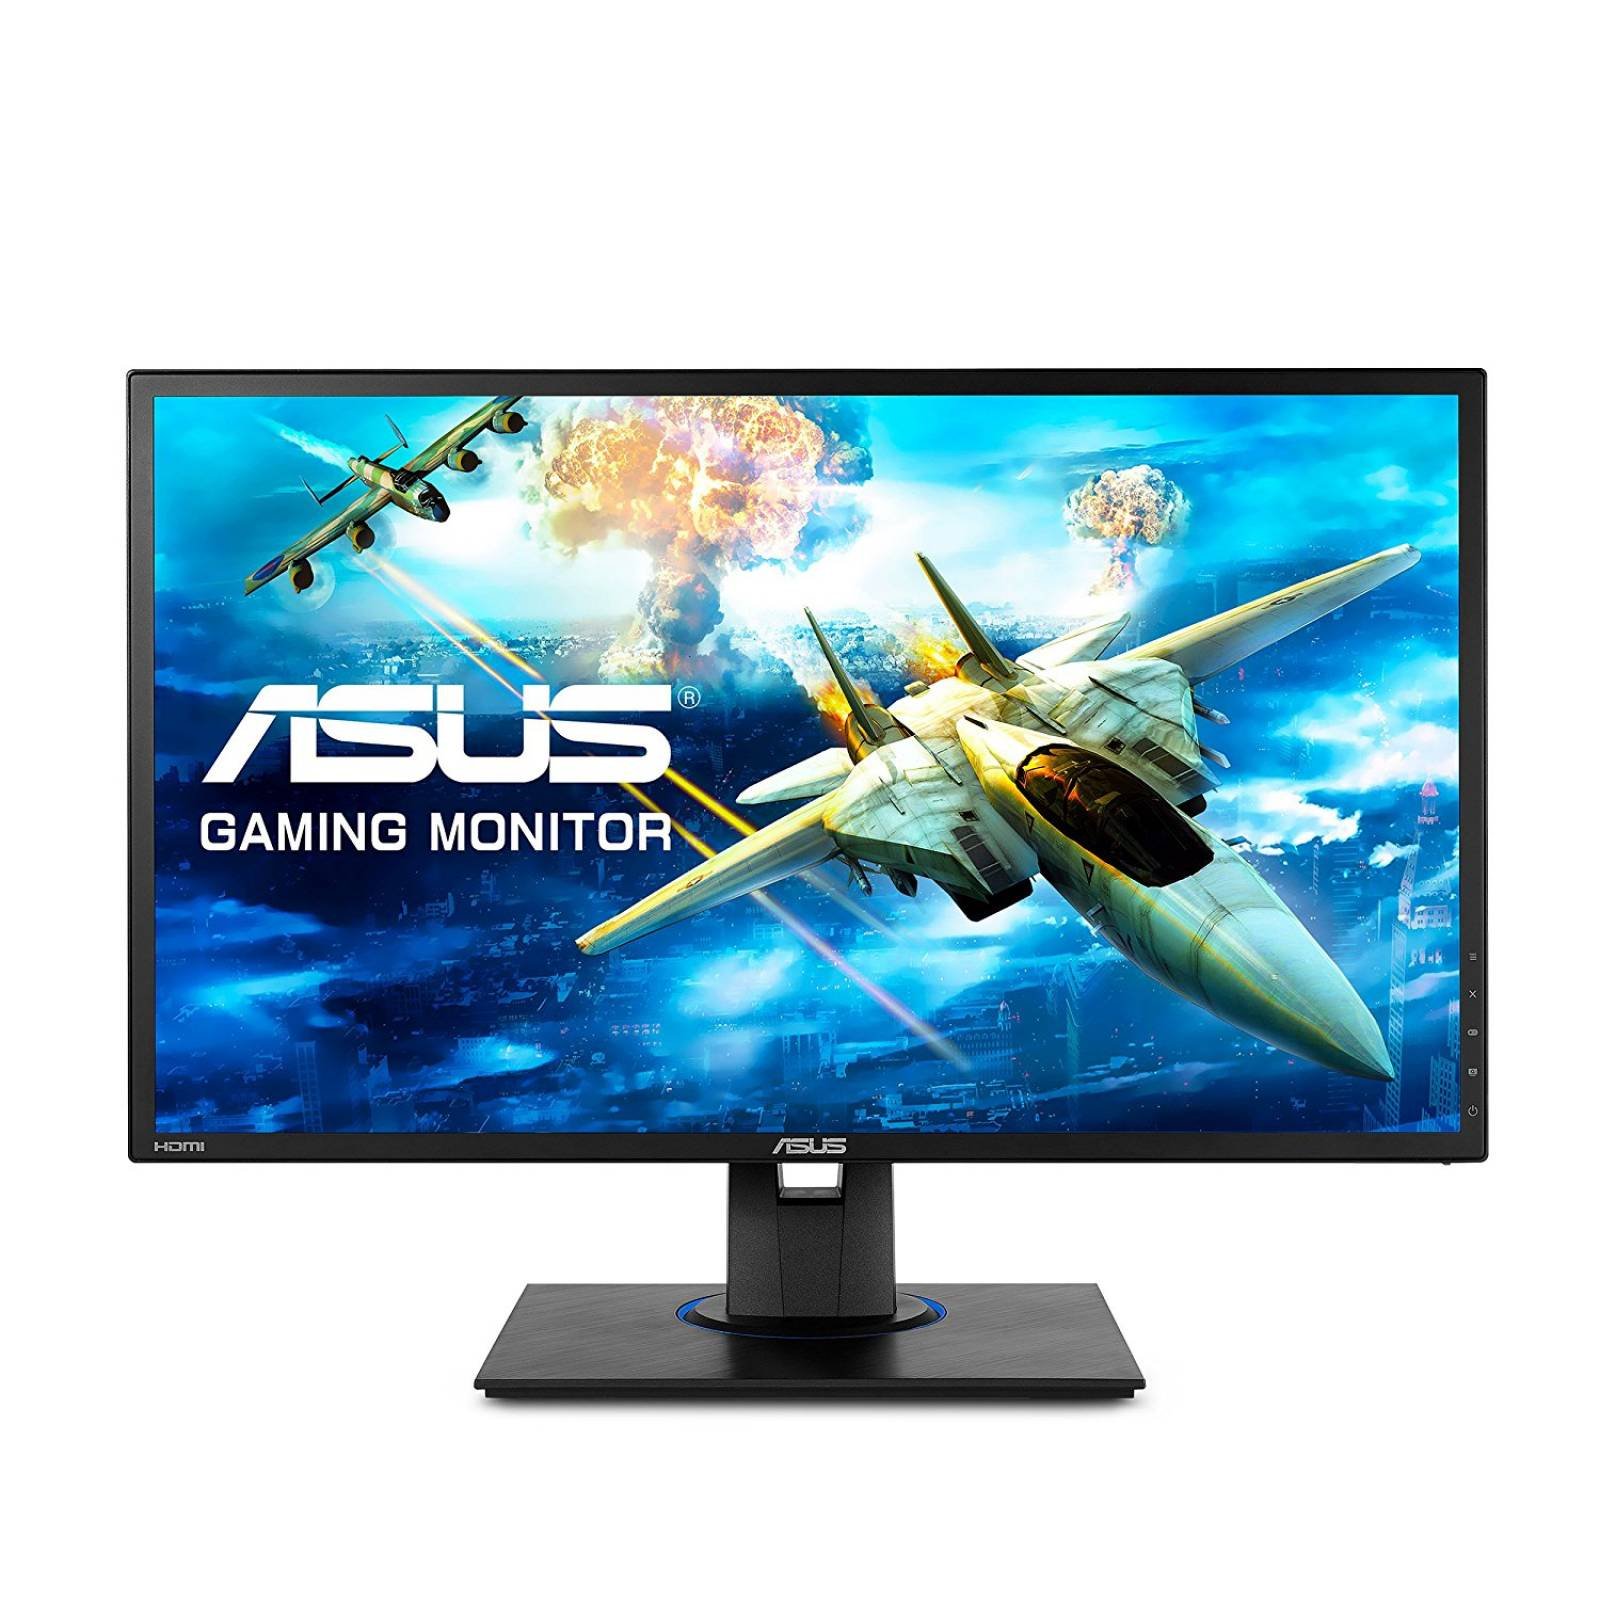 Monitor Gamer Asus Vg245he 24  Full Hd 1080p 1ms Dual Hdmi